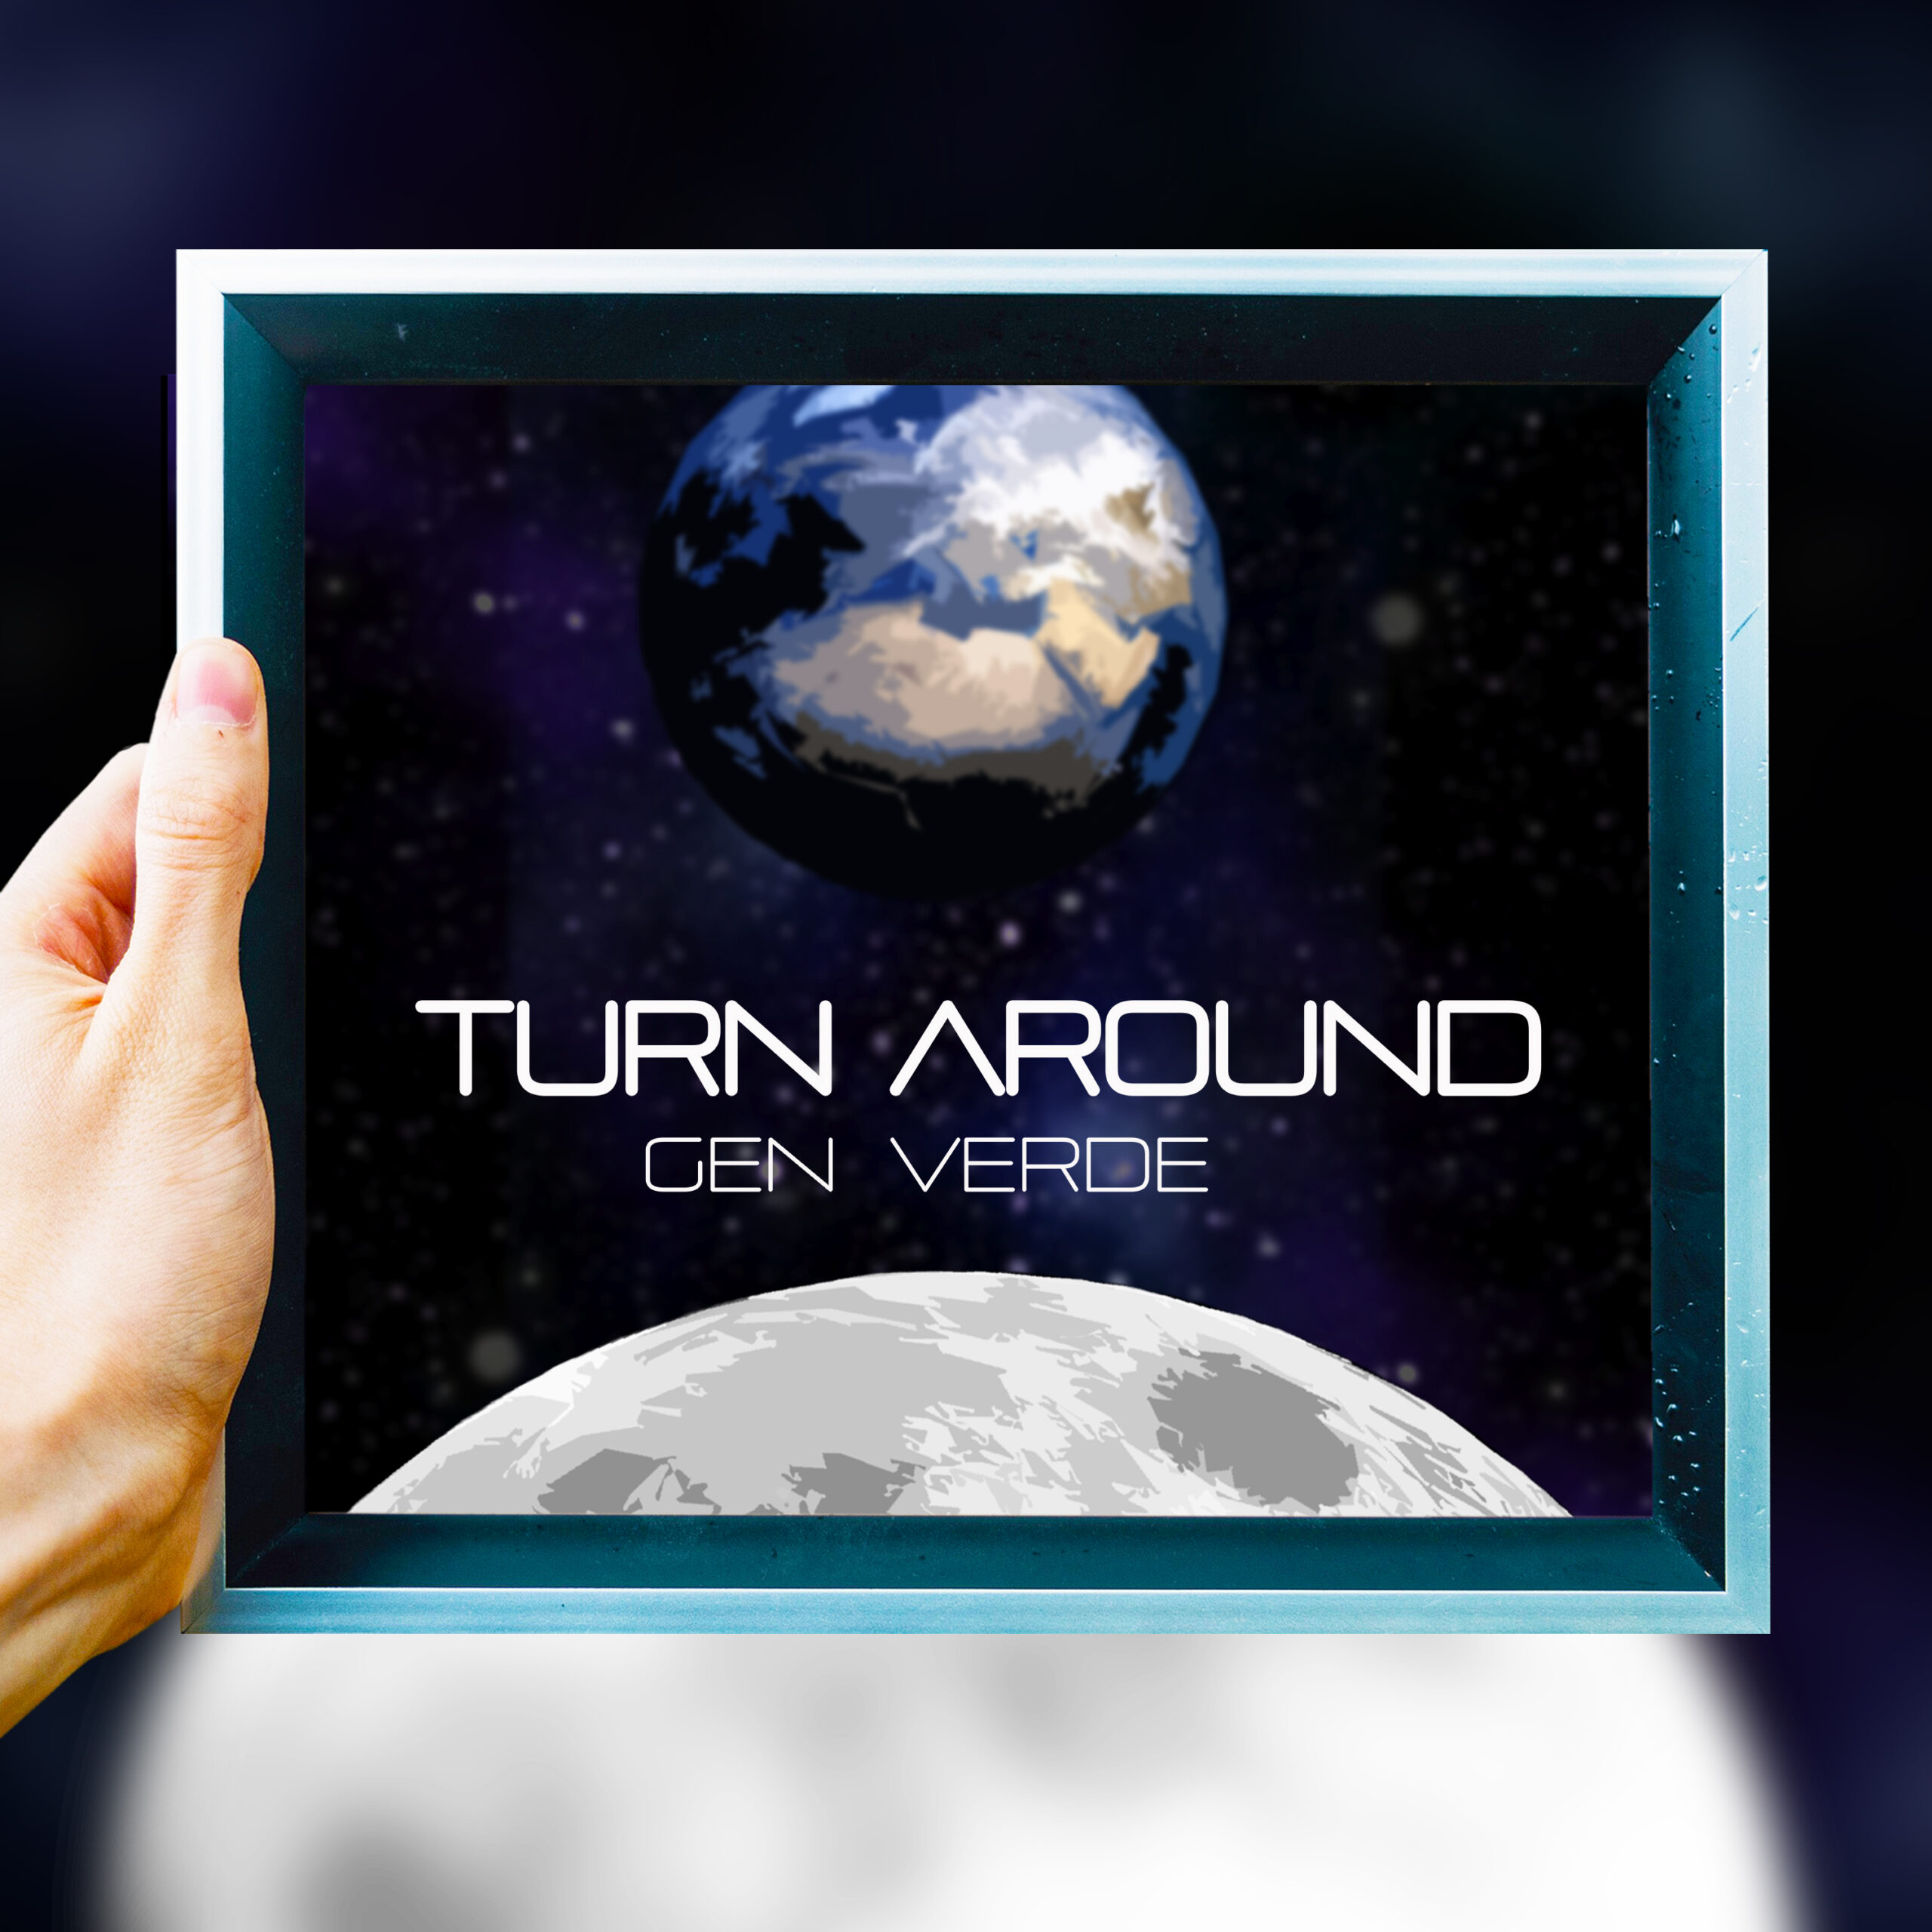 Turn Around - Gen Verde's new single